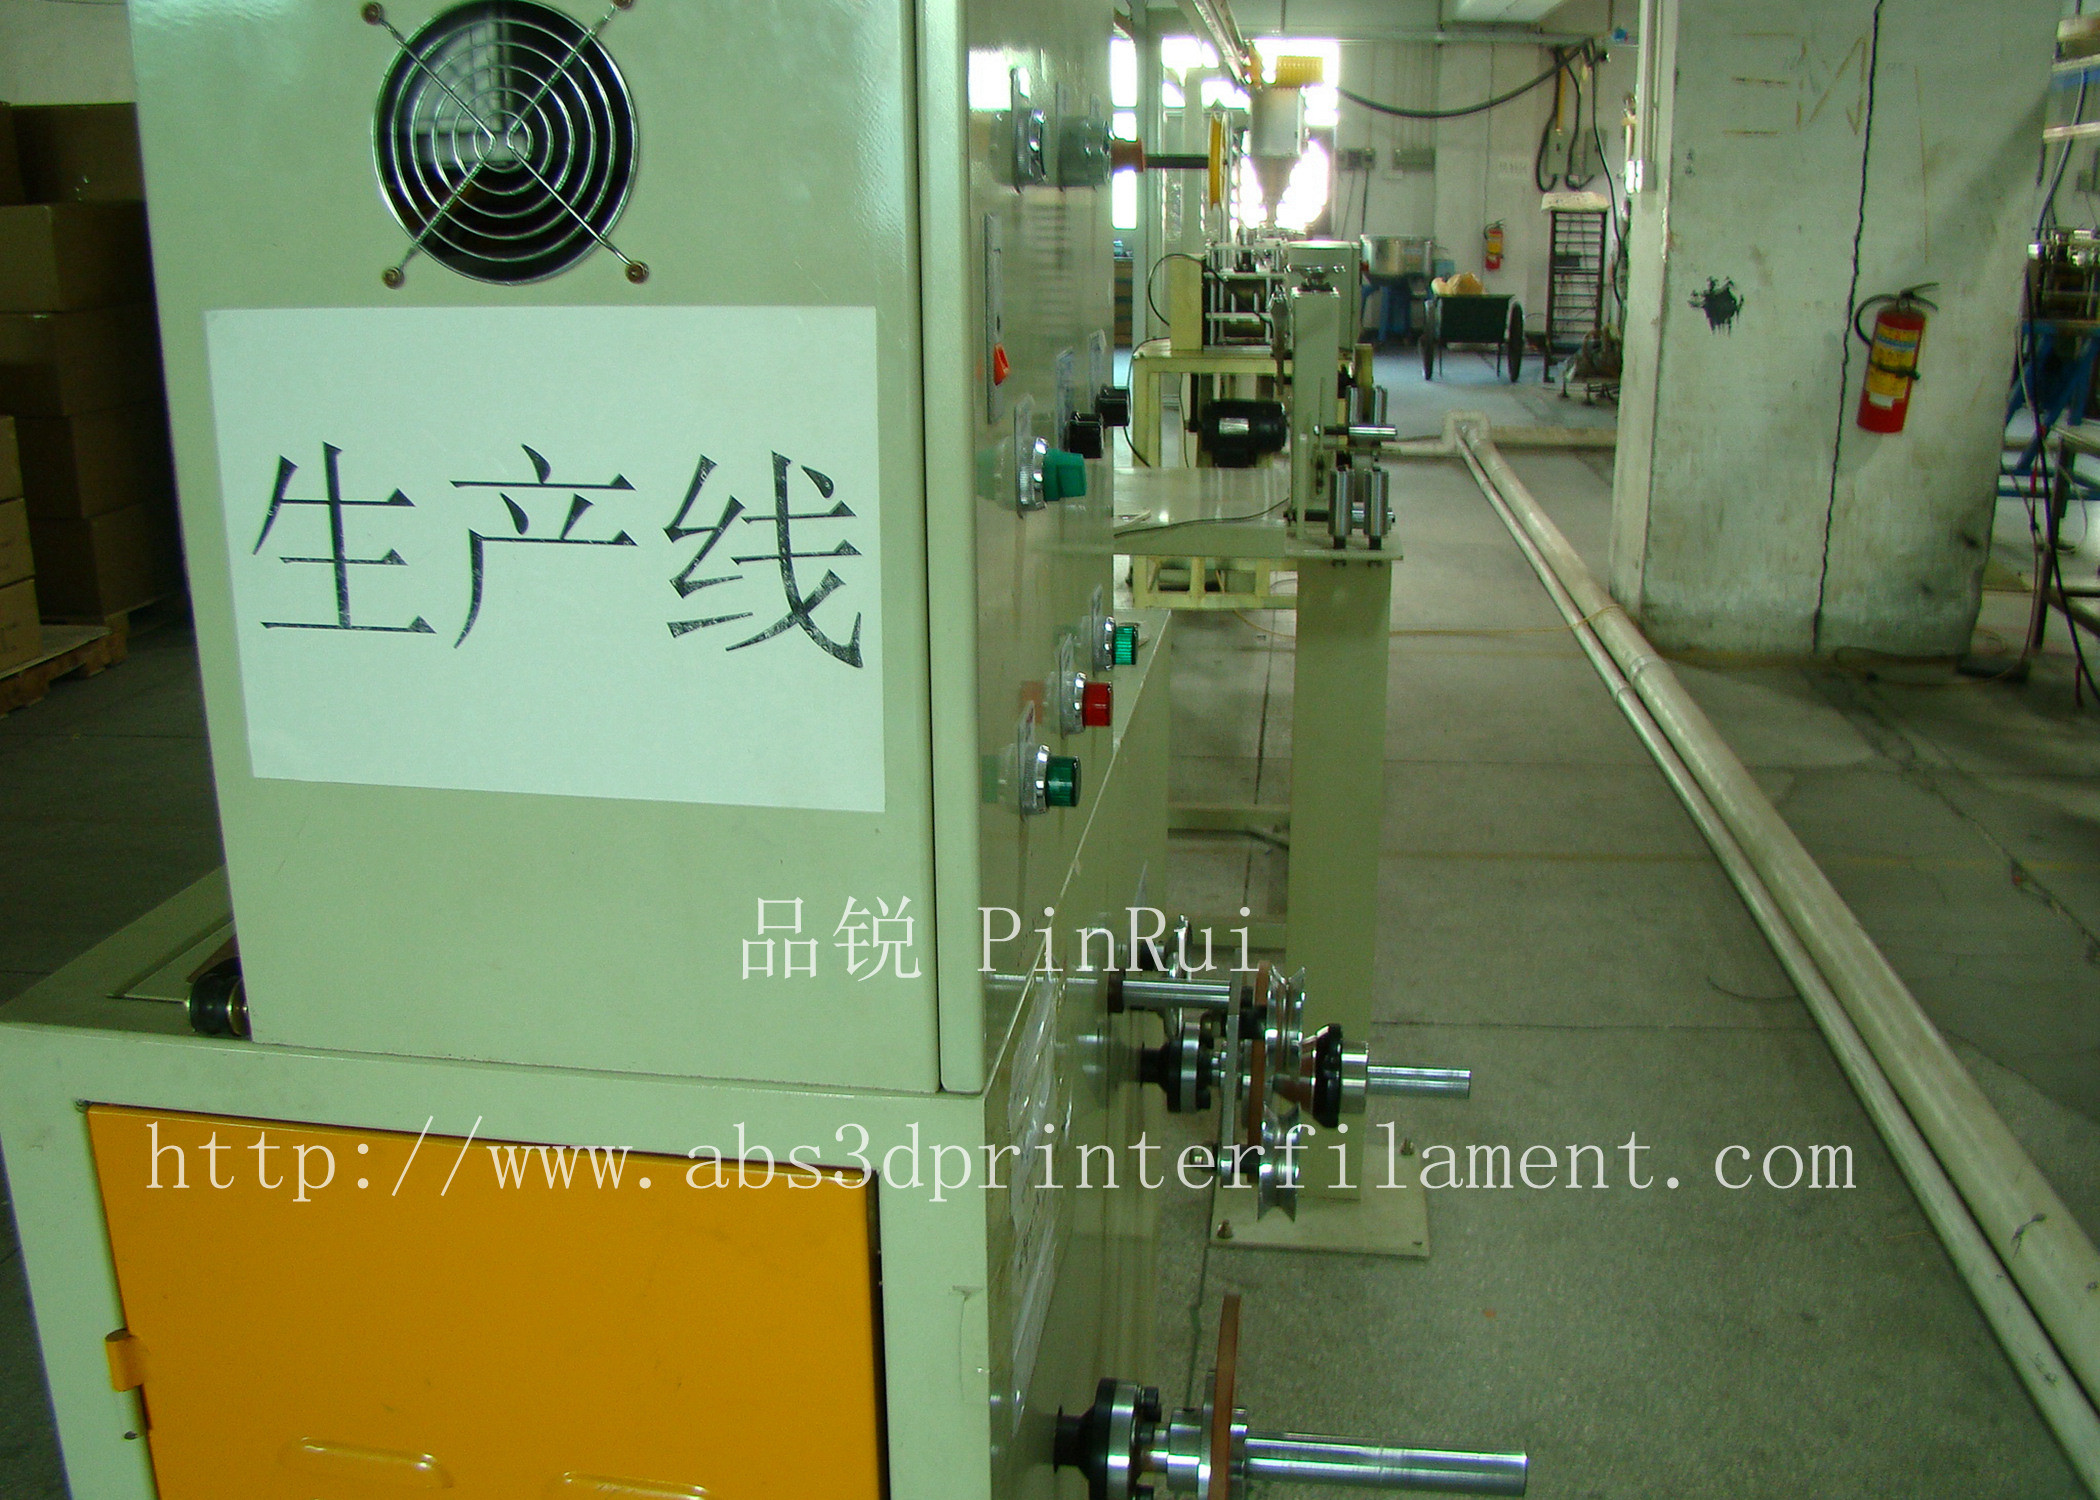 Dongguan Dezhijian Plastic Electronic Ltd